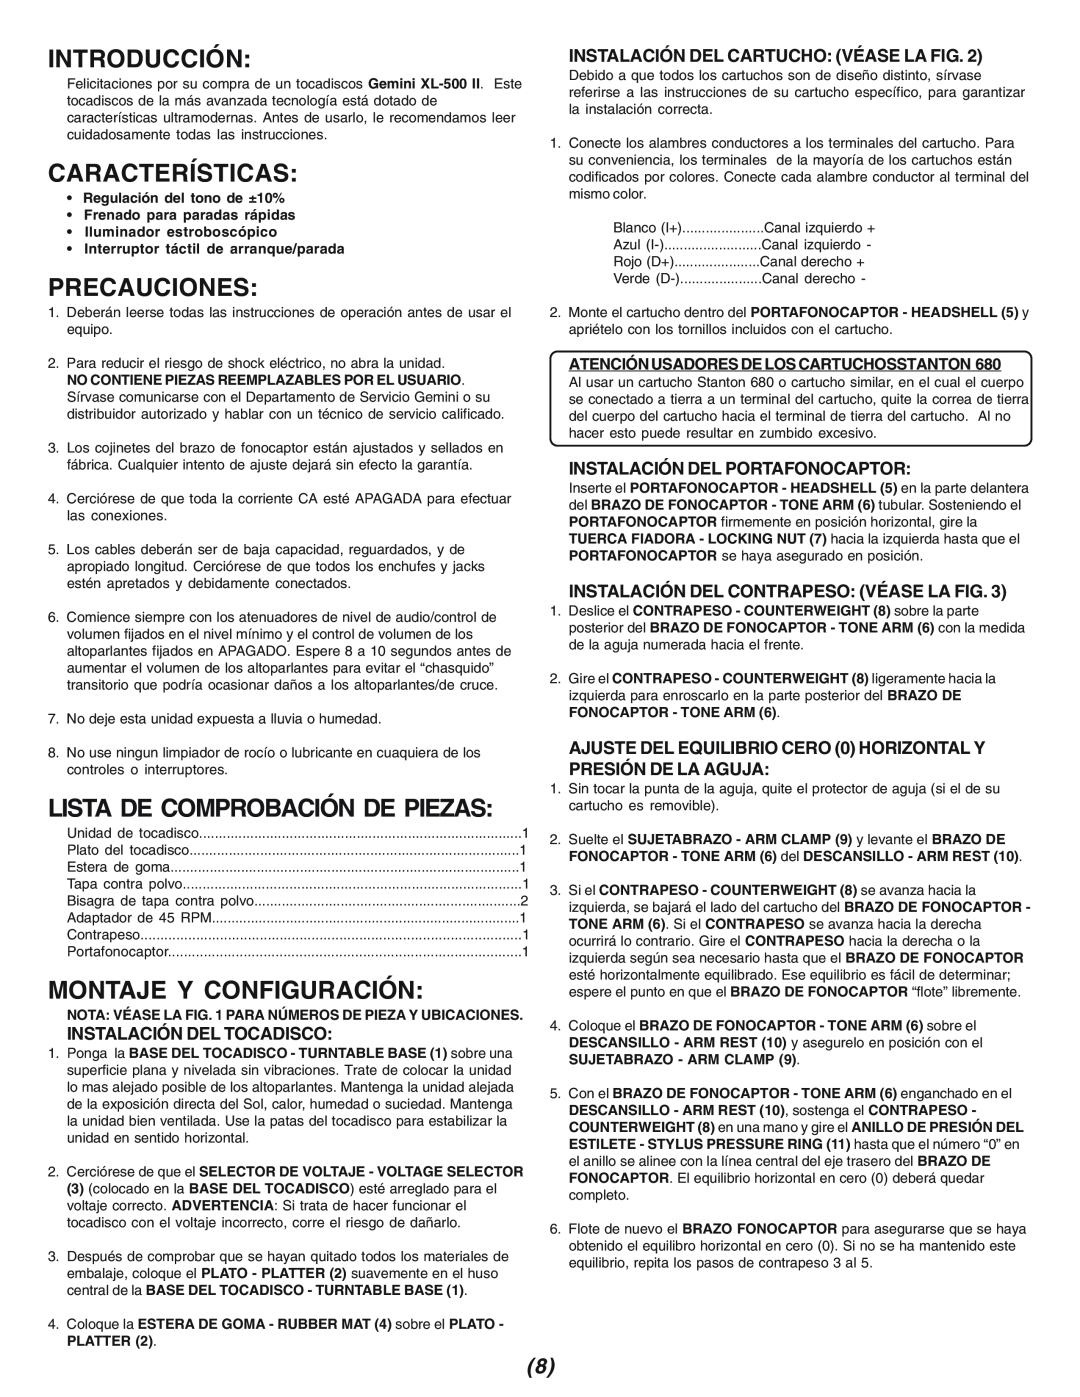 Gemini XL-500II manual Introducción, Características, Precauciones, Montaje Y Configuración, Instalación Del Tocadisco 